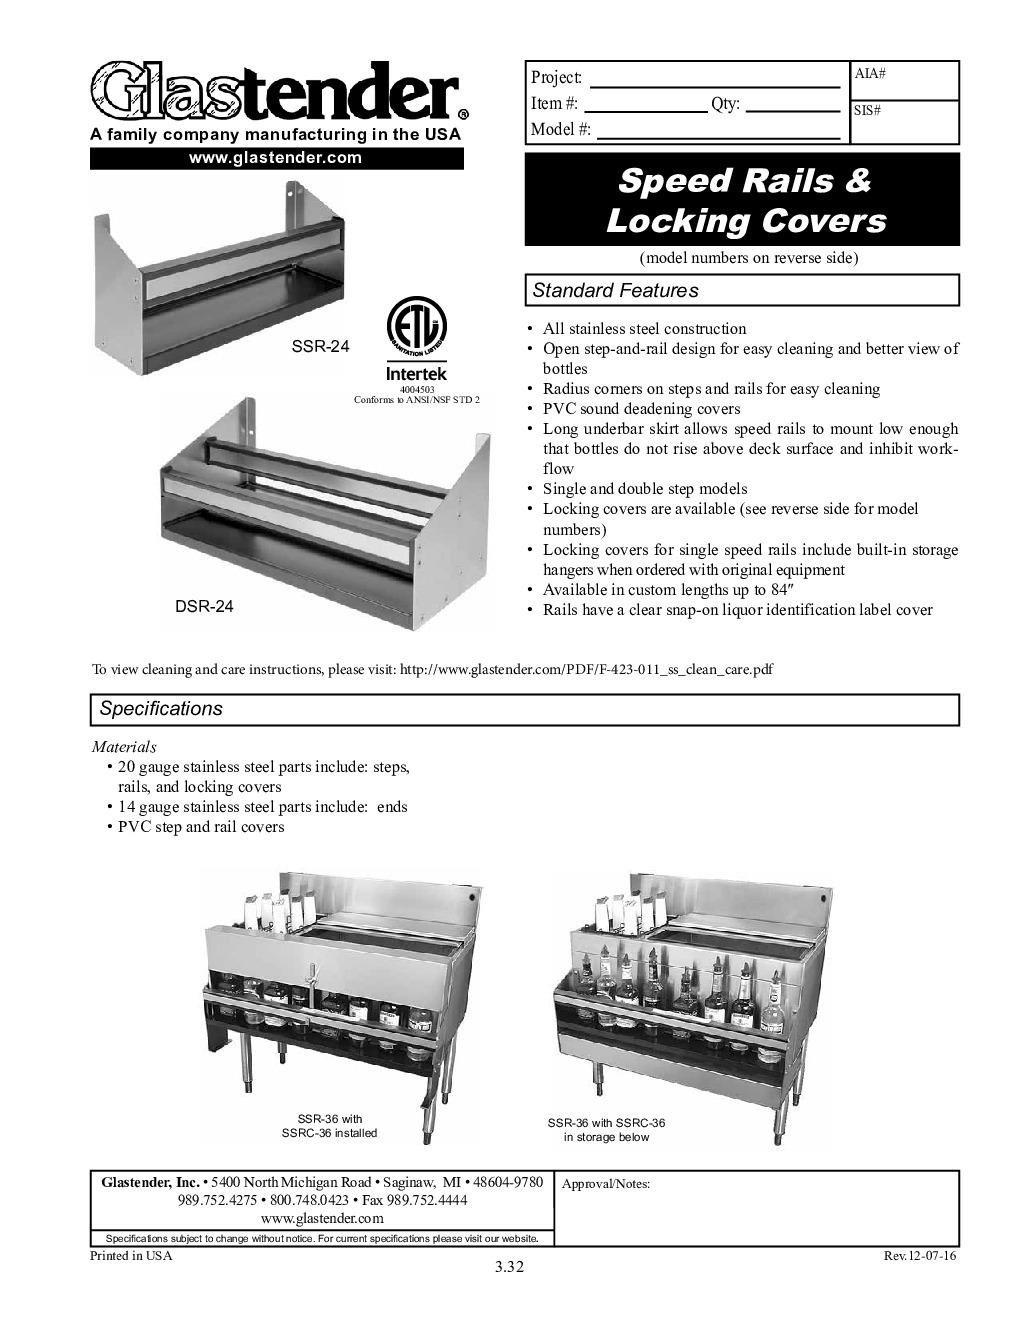 Glastender DSRC-46 Cover Speed Rail / Rack